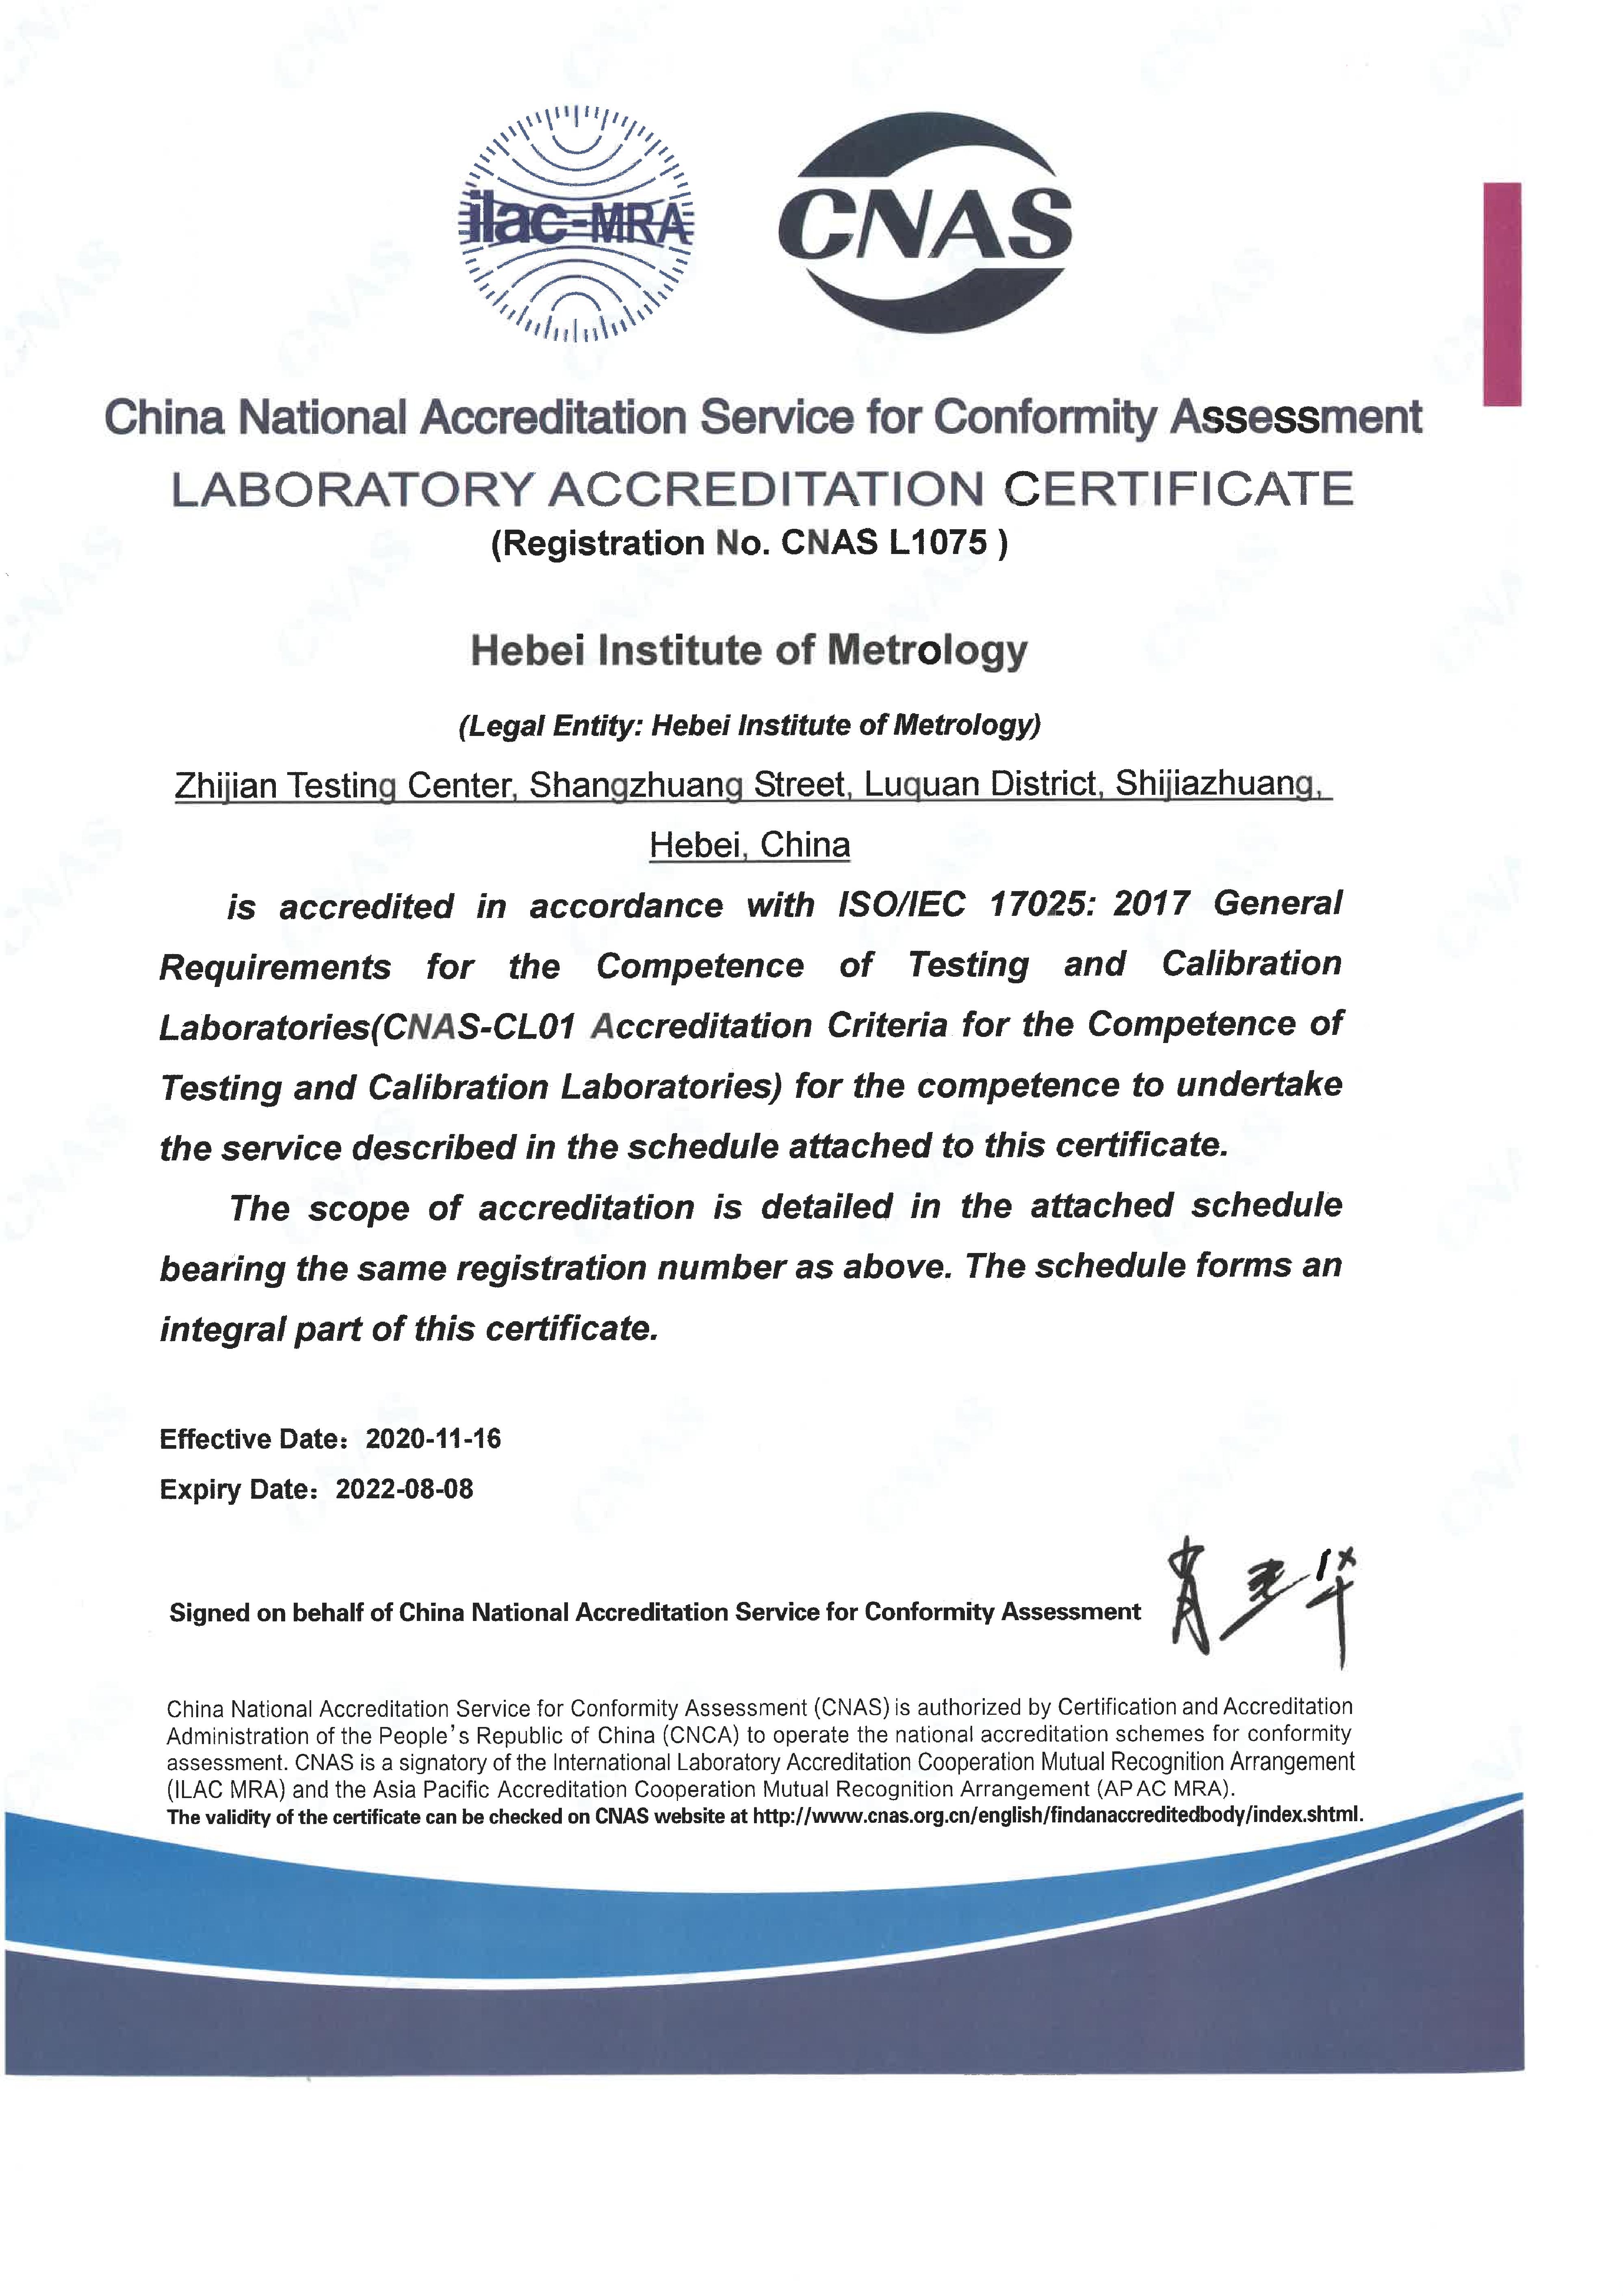 认可证书（2020-11-16）——放到技术能力-实验室认可CNAS_2.JPG